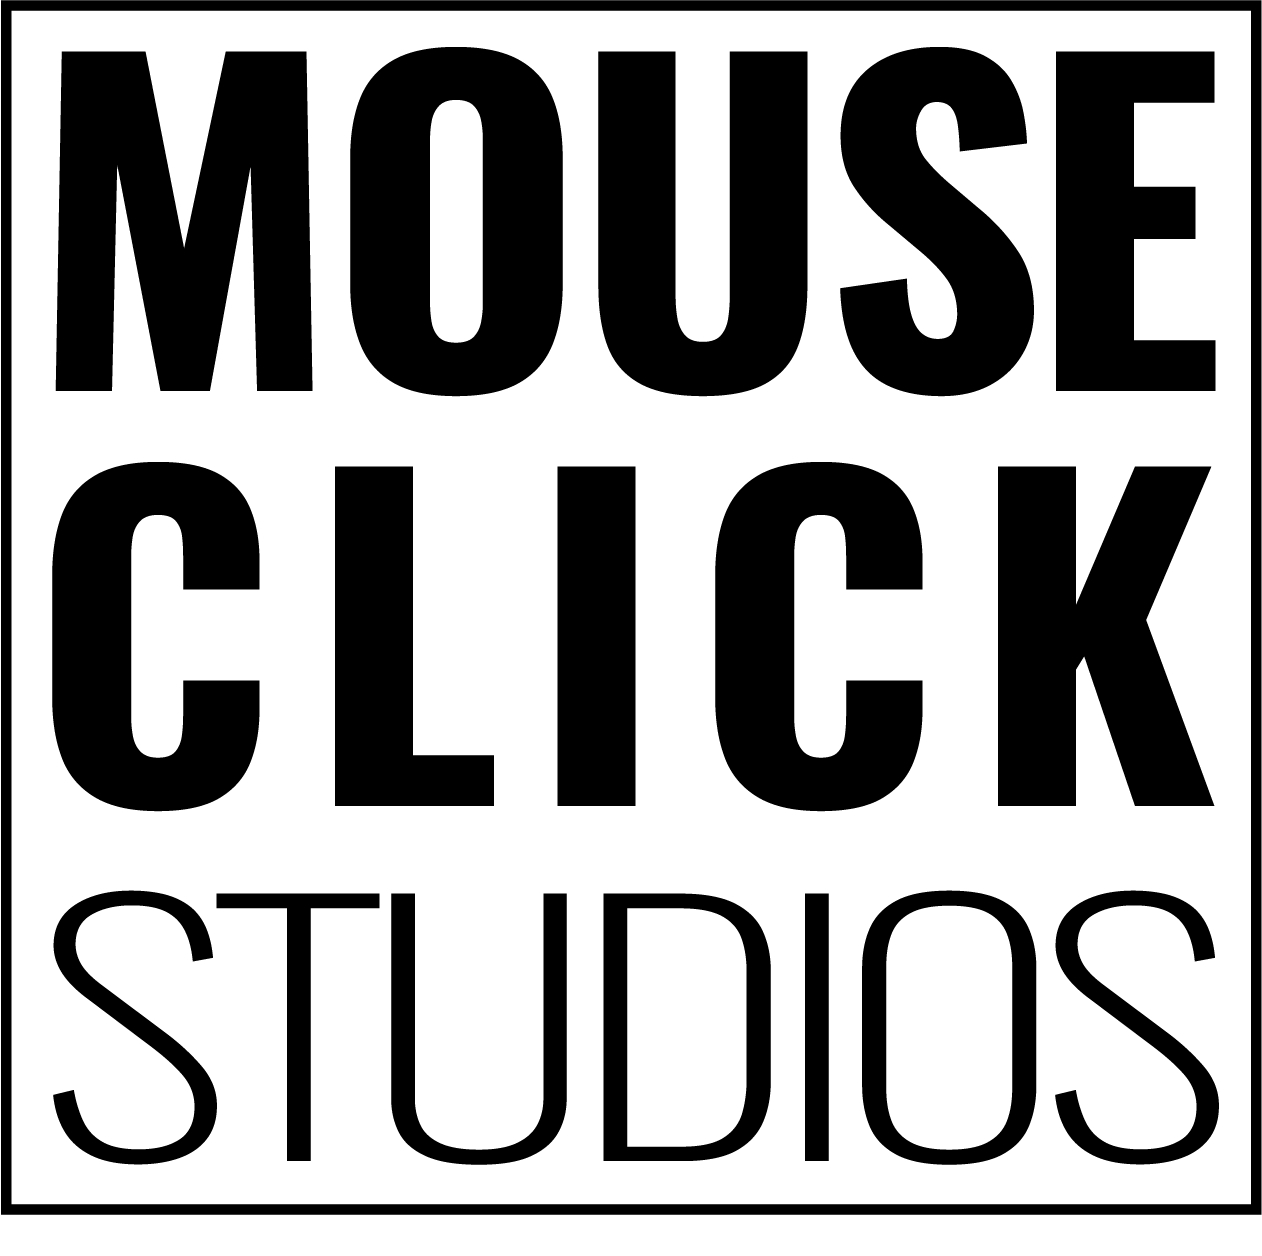 Mouse Click Studios, LLC